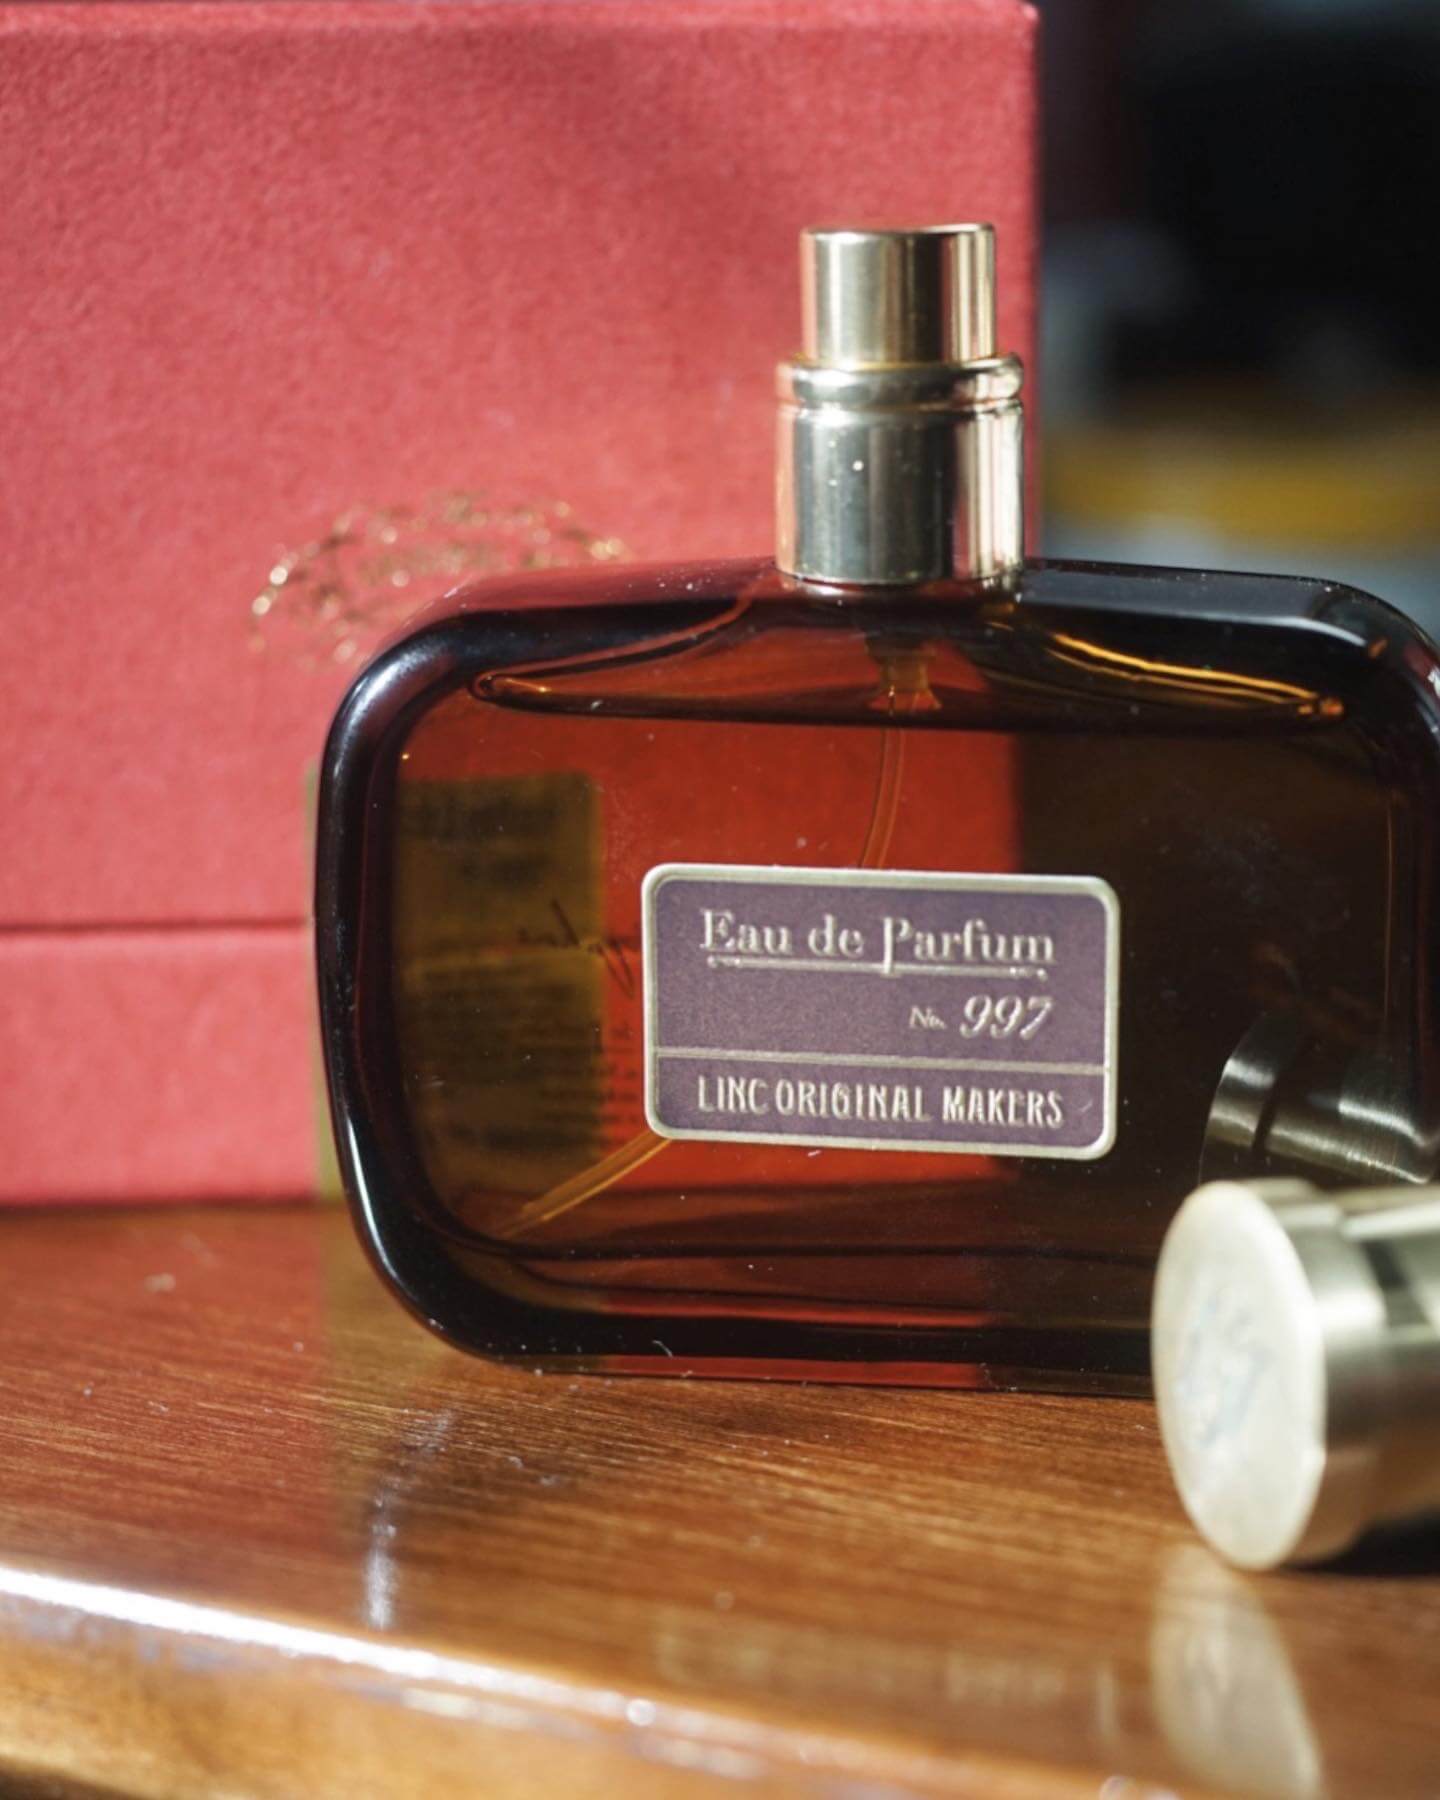 Linc Original Makers 997 EAU DE PARFUM Eau de Parfum